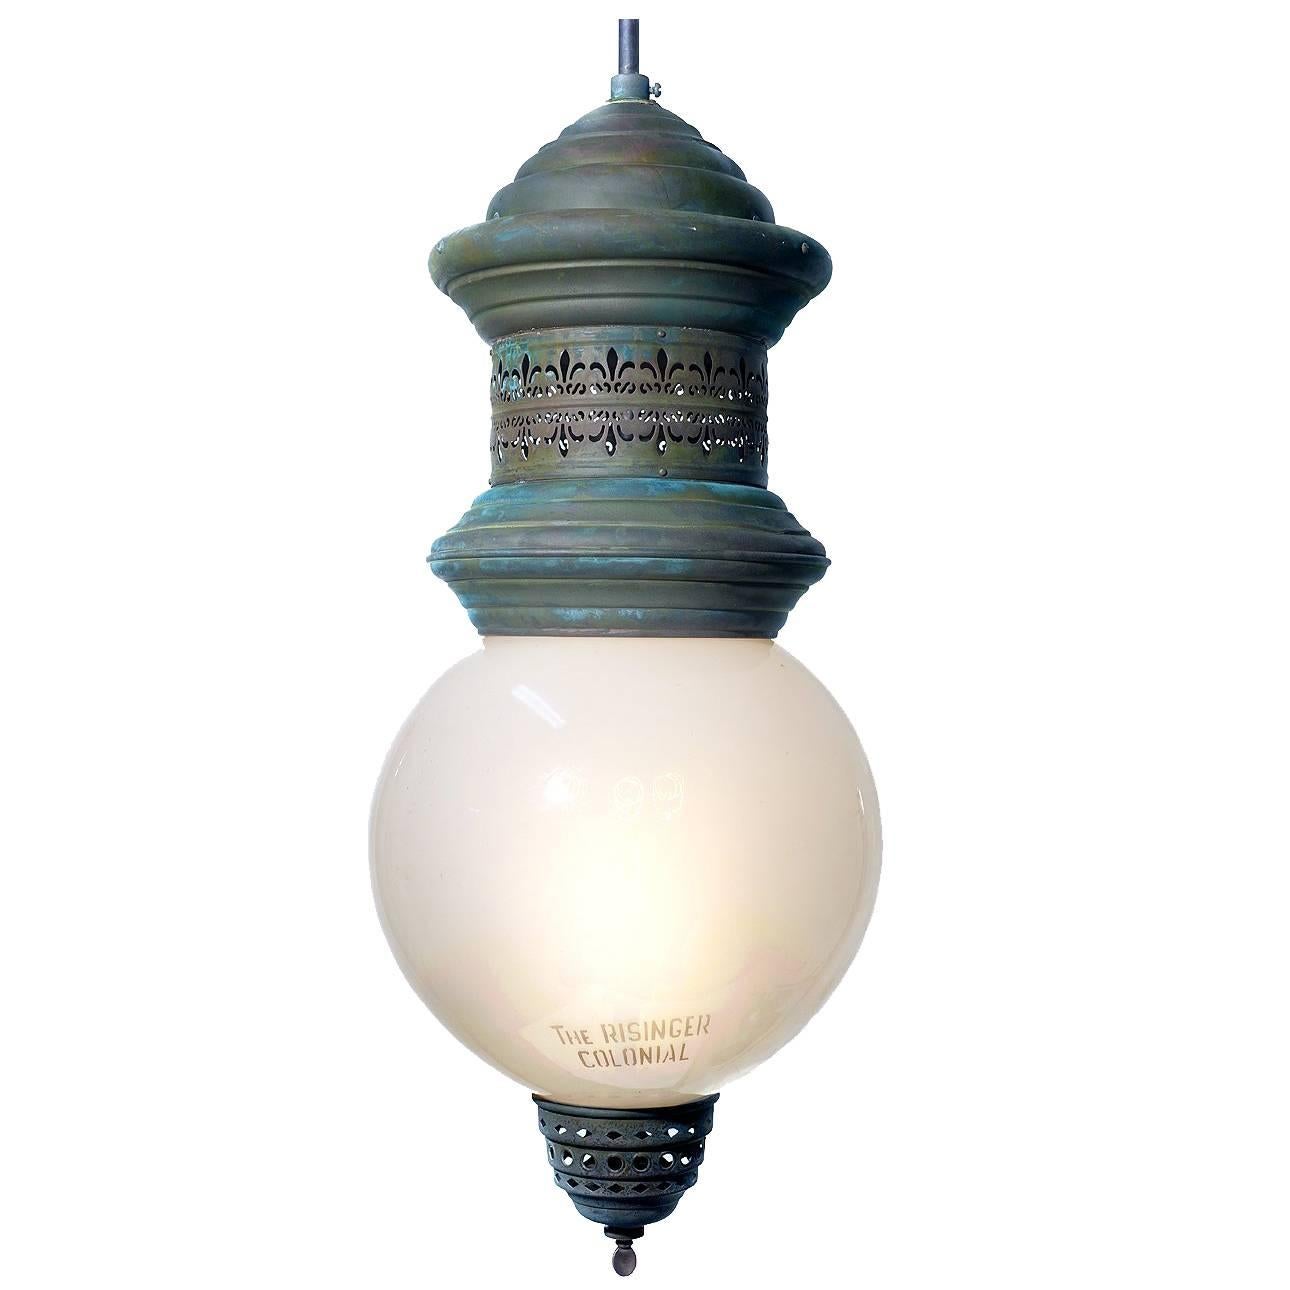 Rare and Original Risinger Colonial Street Lamp